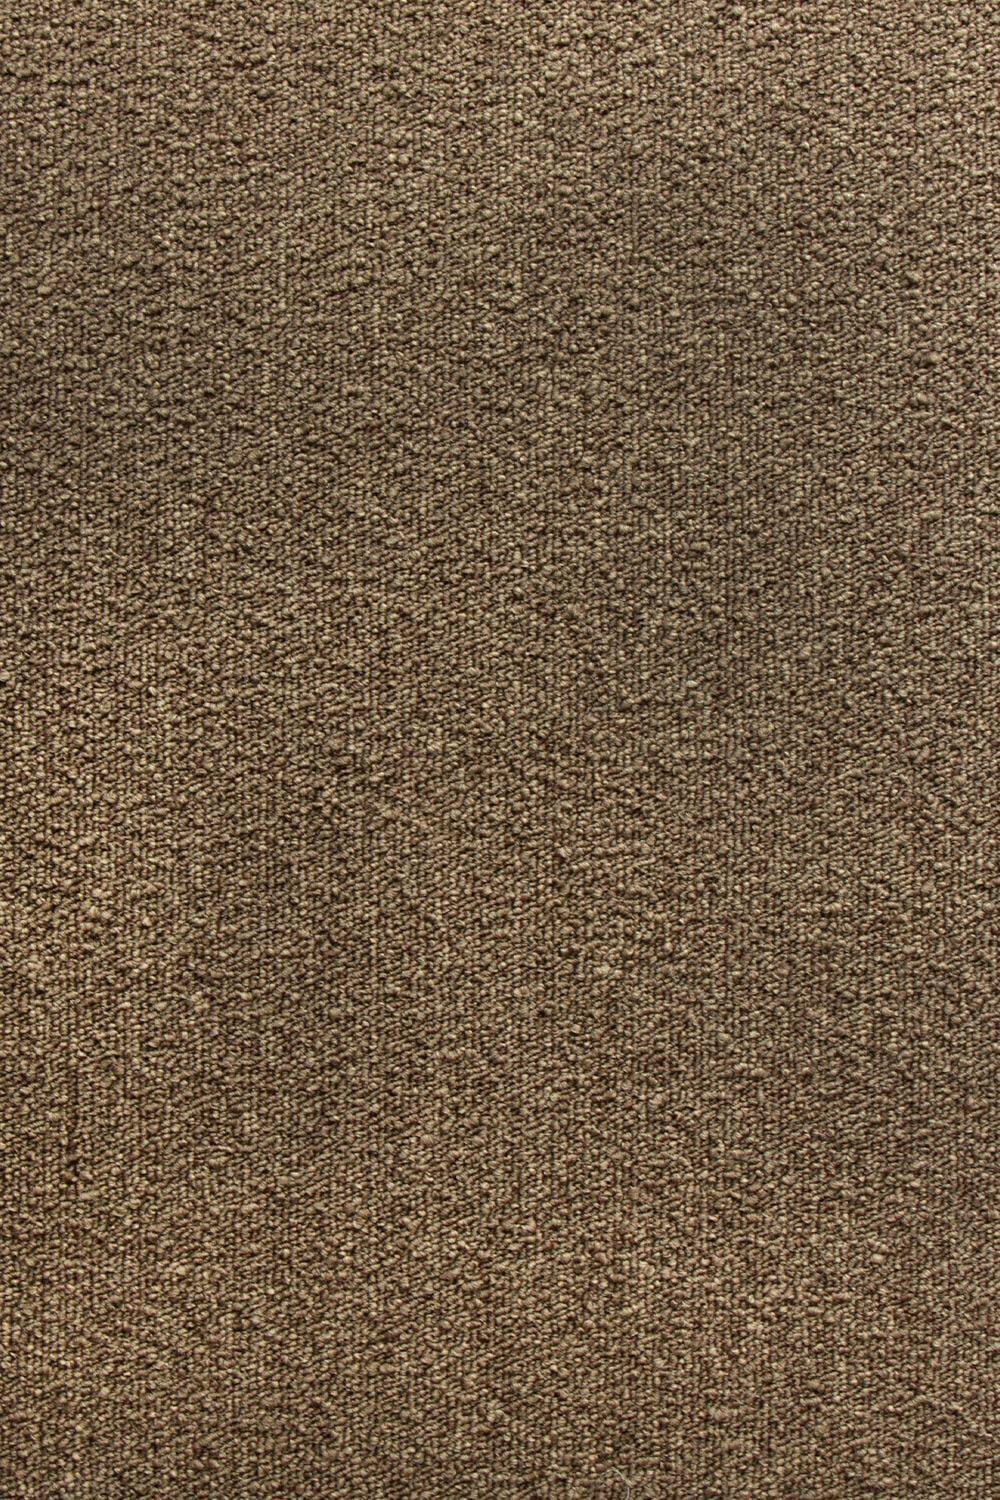 Metrážový koberec Real 93 400 cm